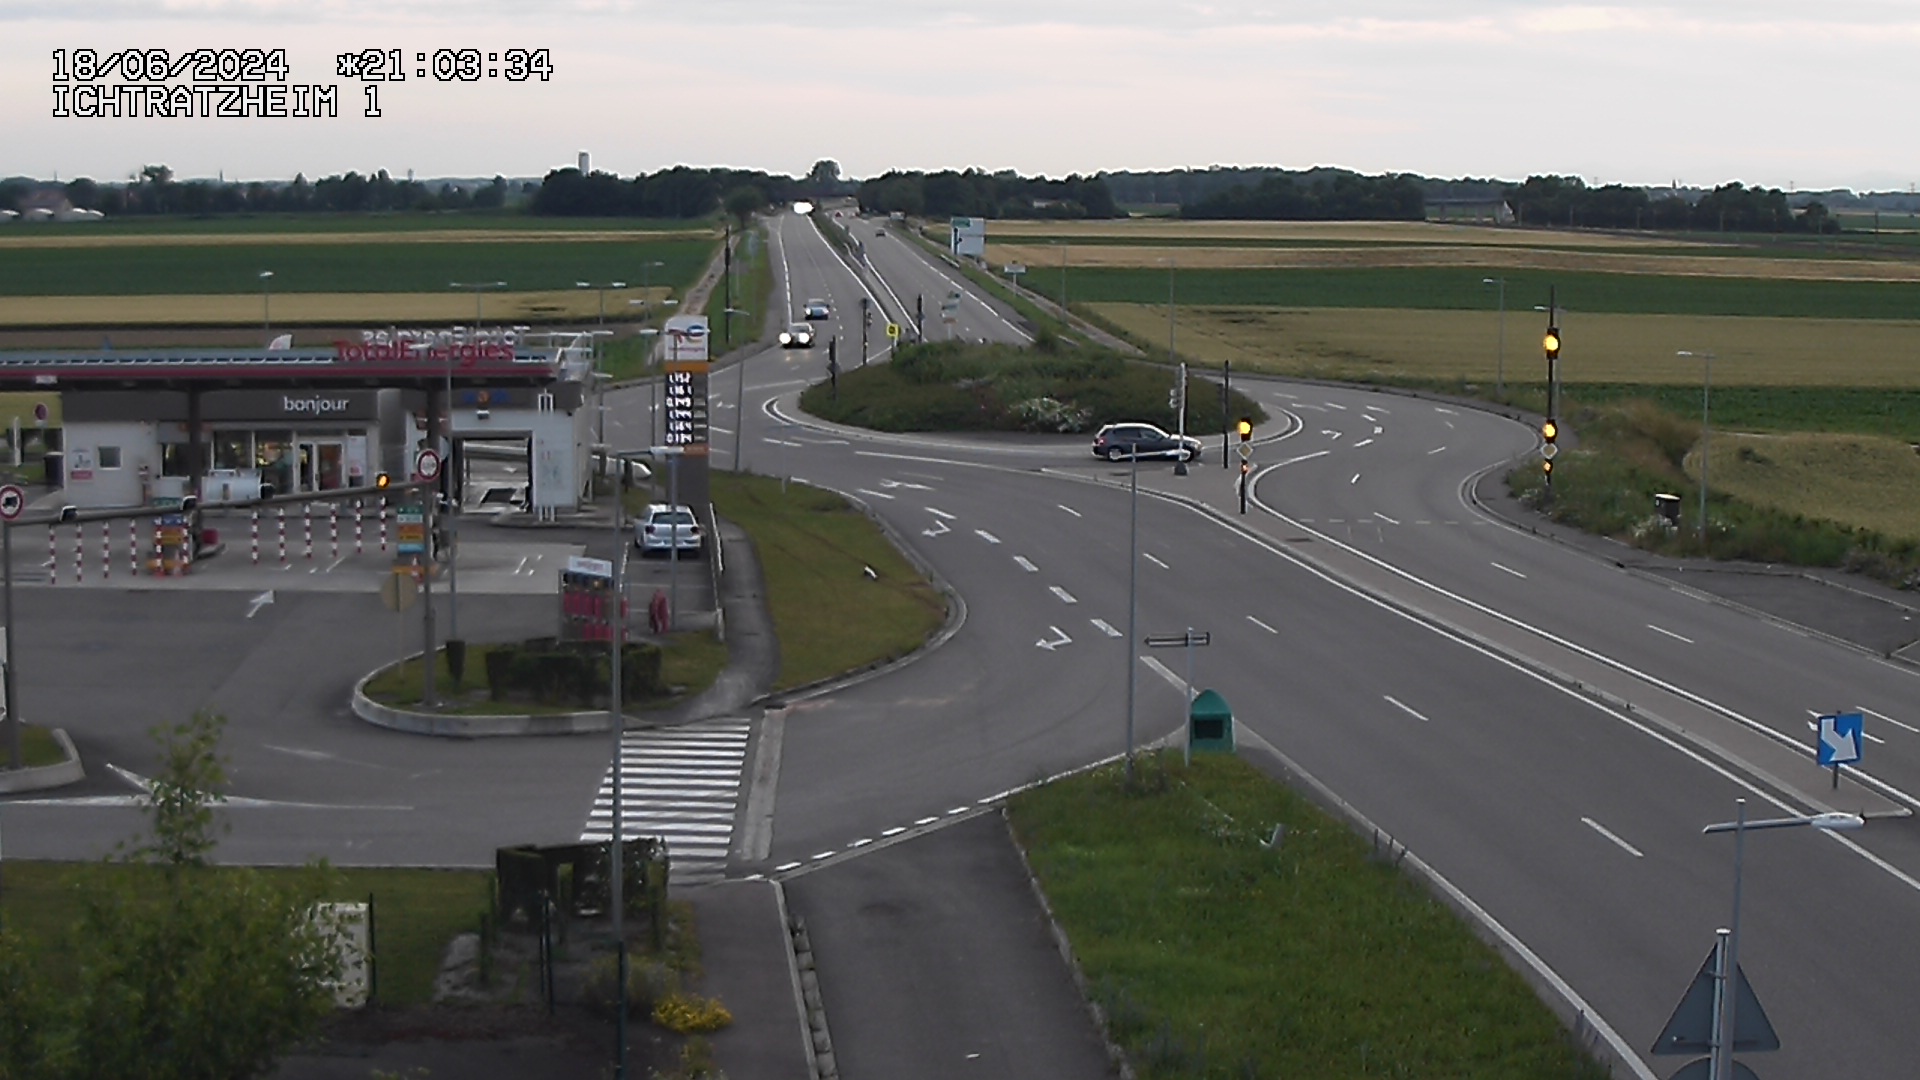 Webcam à Ichtratzheim, au sud de Strasbourg sur la D1089 (anciennement D89). Vue orientée vers Colmar